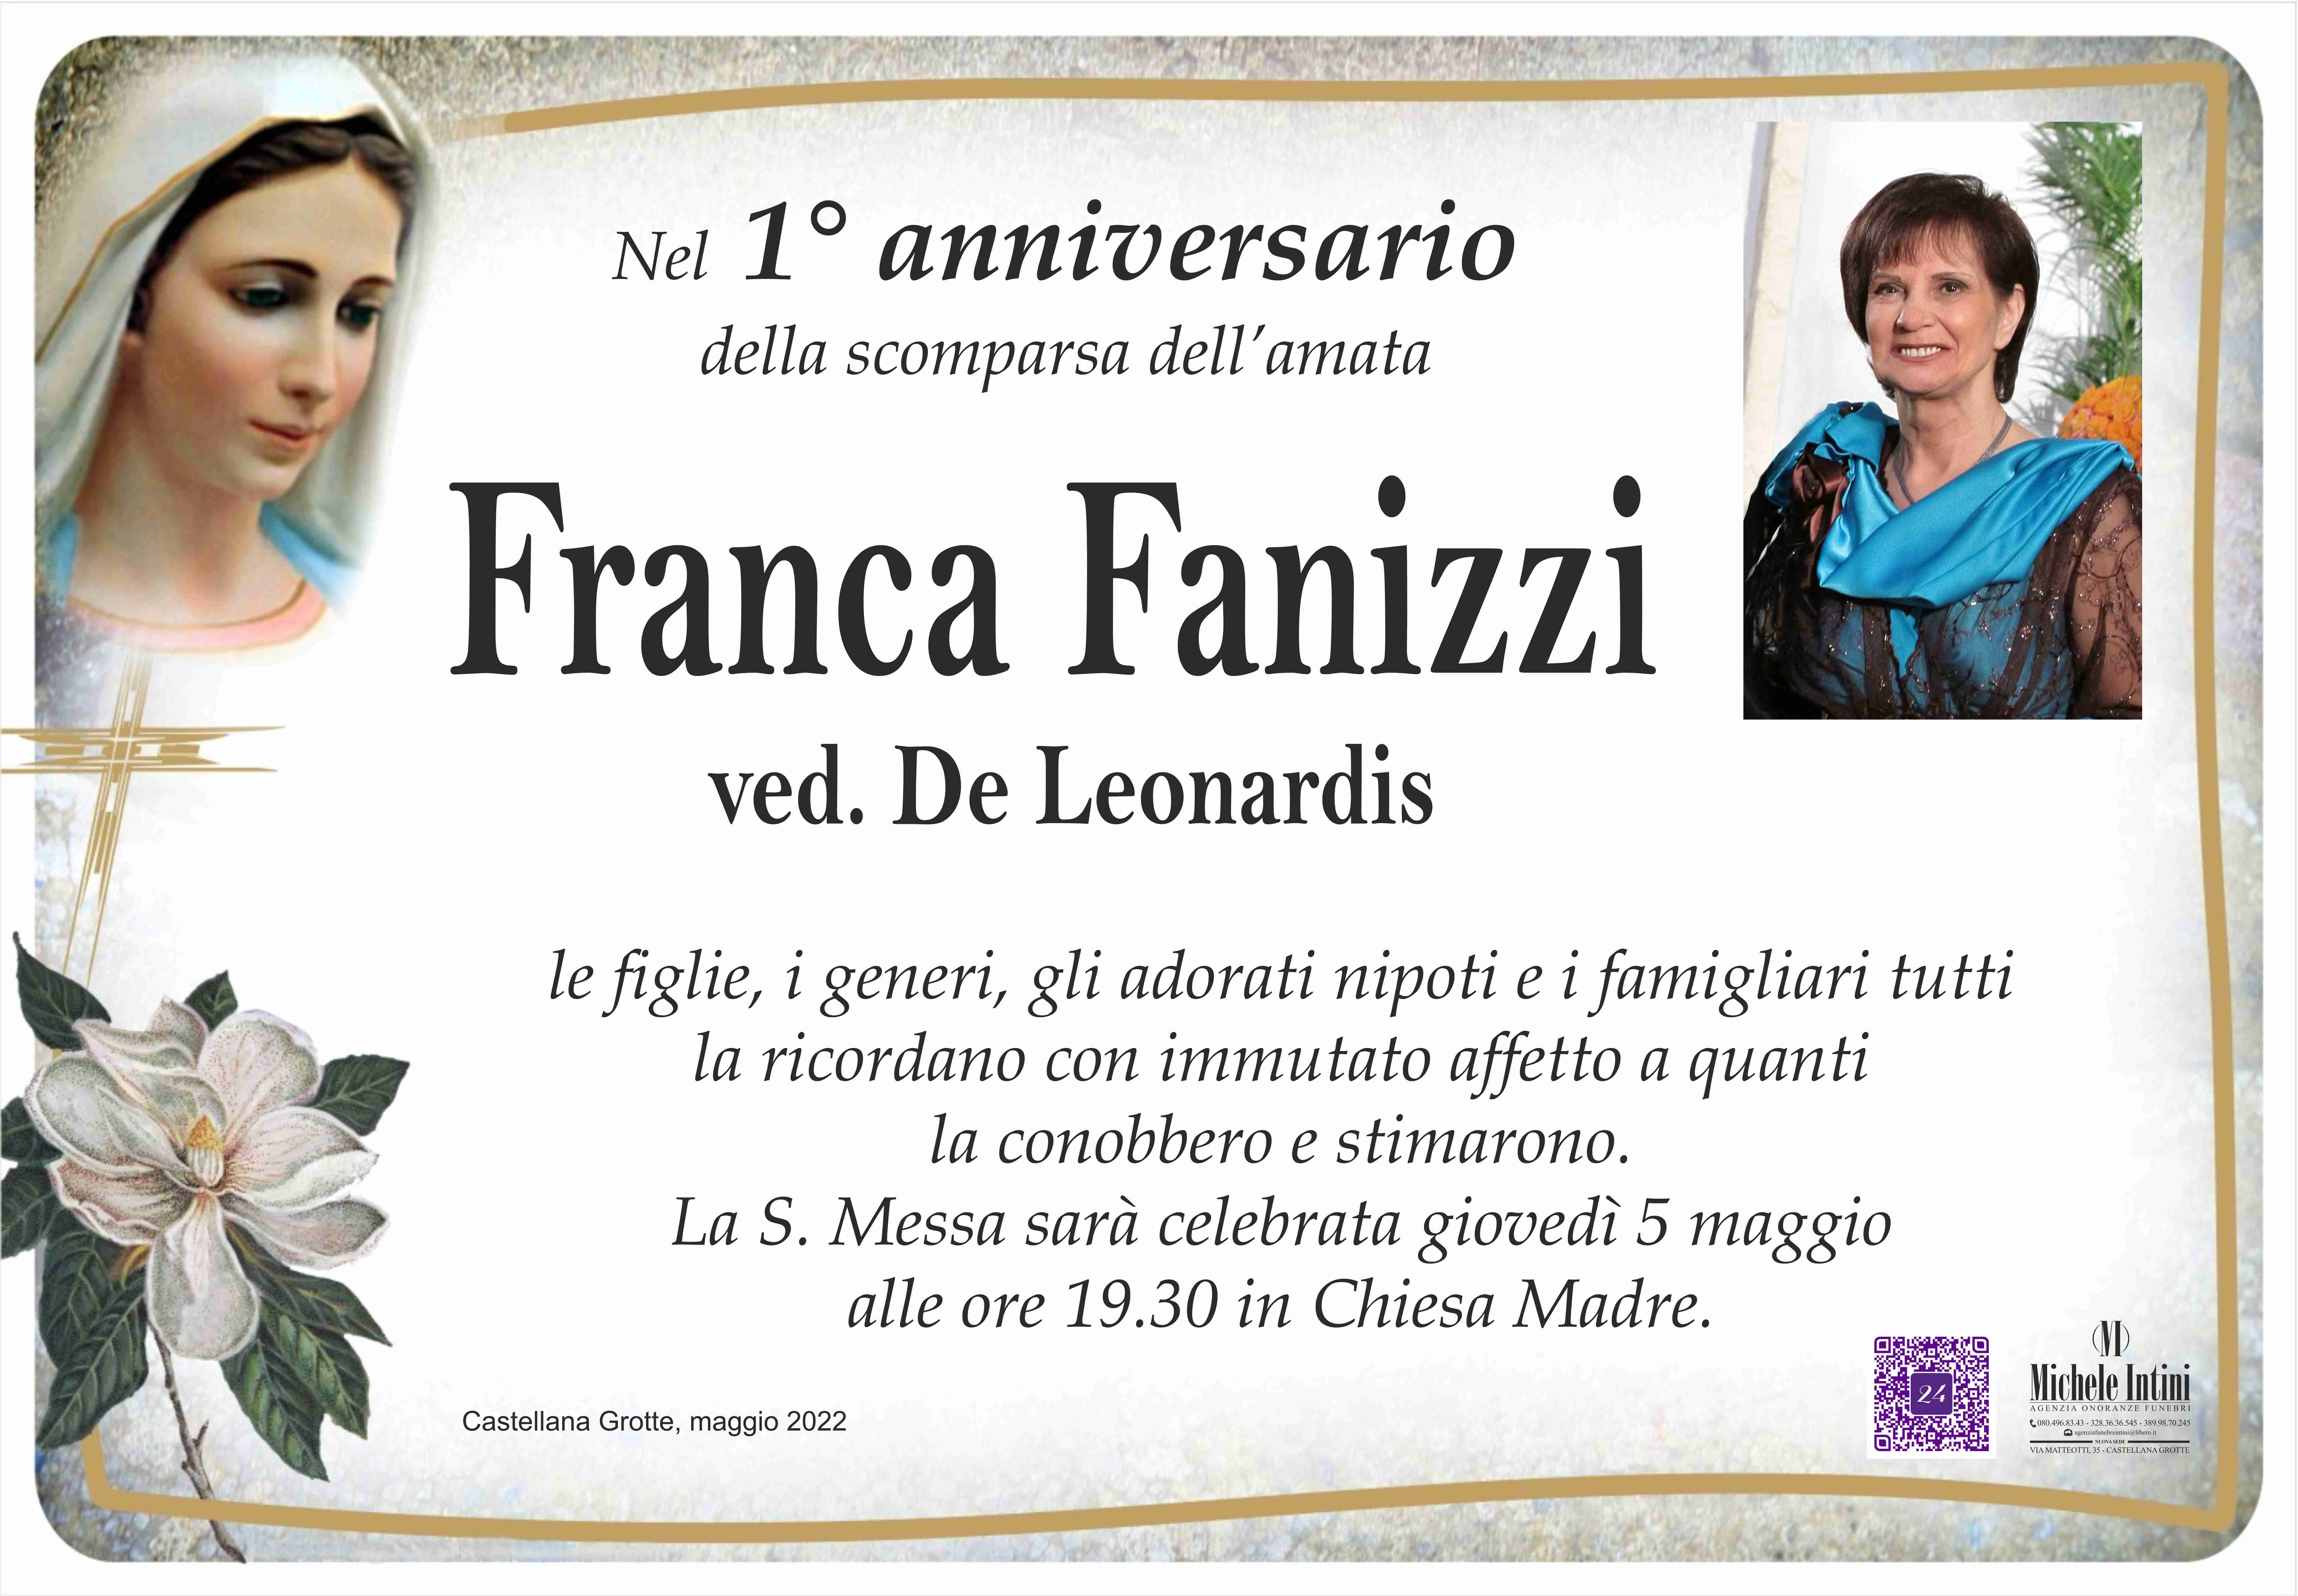 Grazia Fanizzi